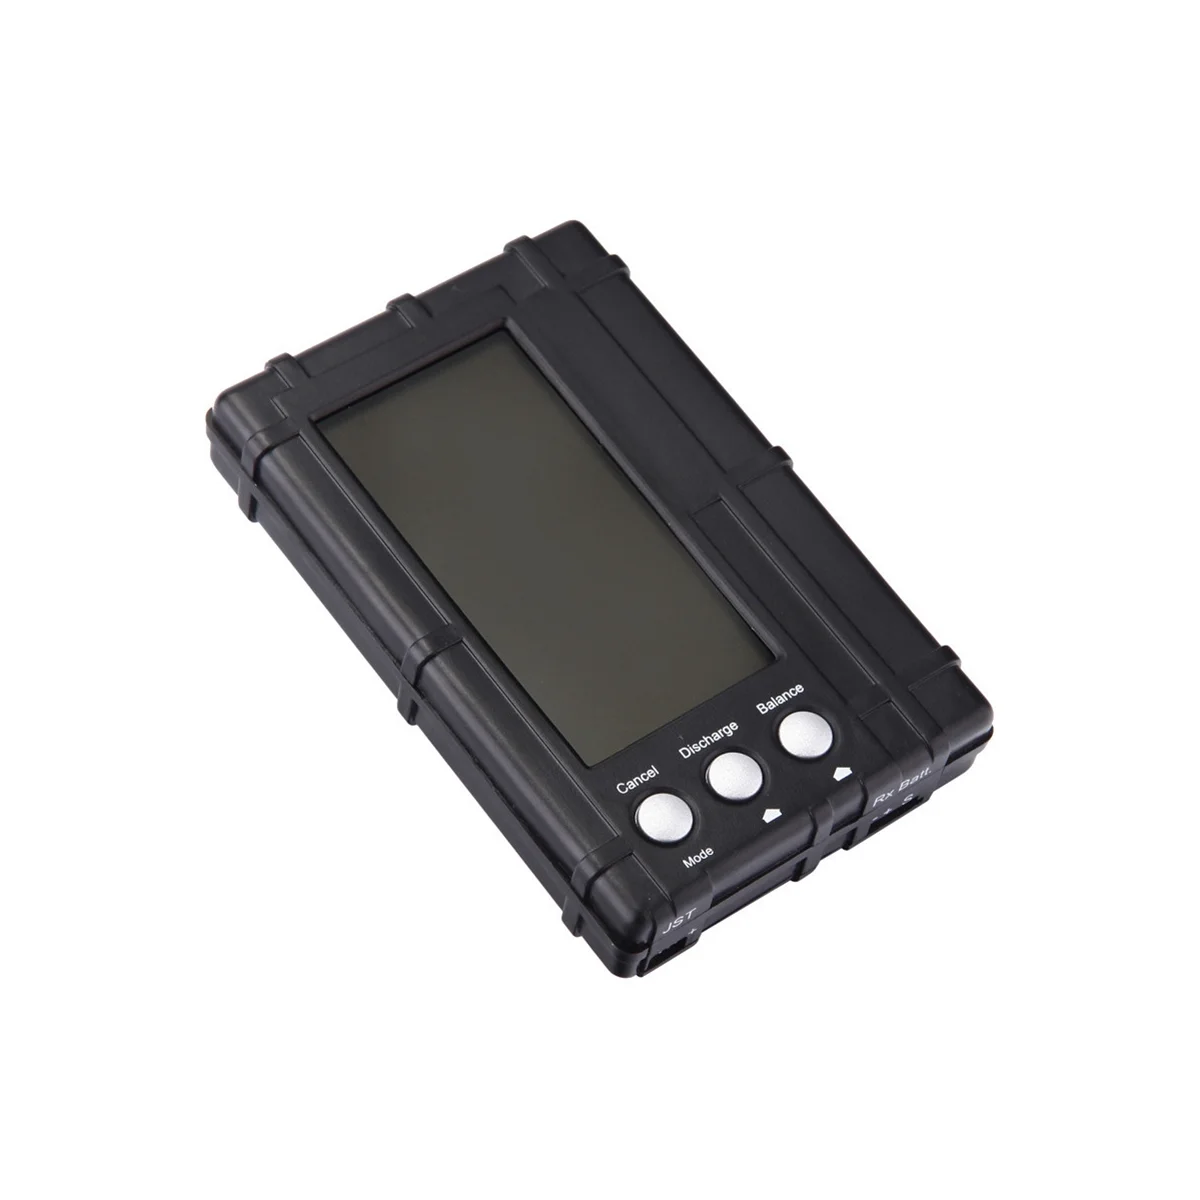 LCD Ekran pil test cihazı Elektrik Aksesuarları Polimer Pil Deşarj Ölçer 3-İn-1 Pil Dengeleyici